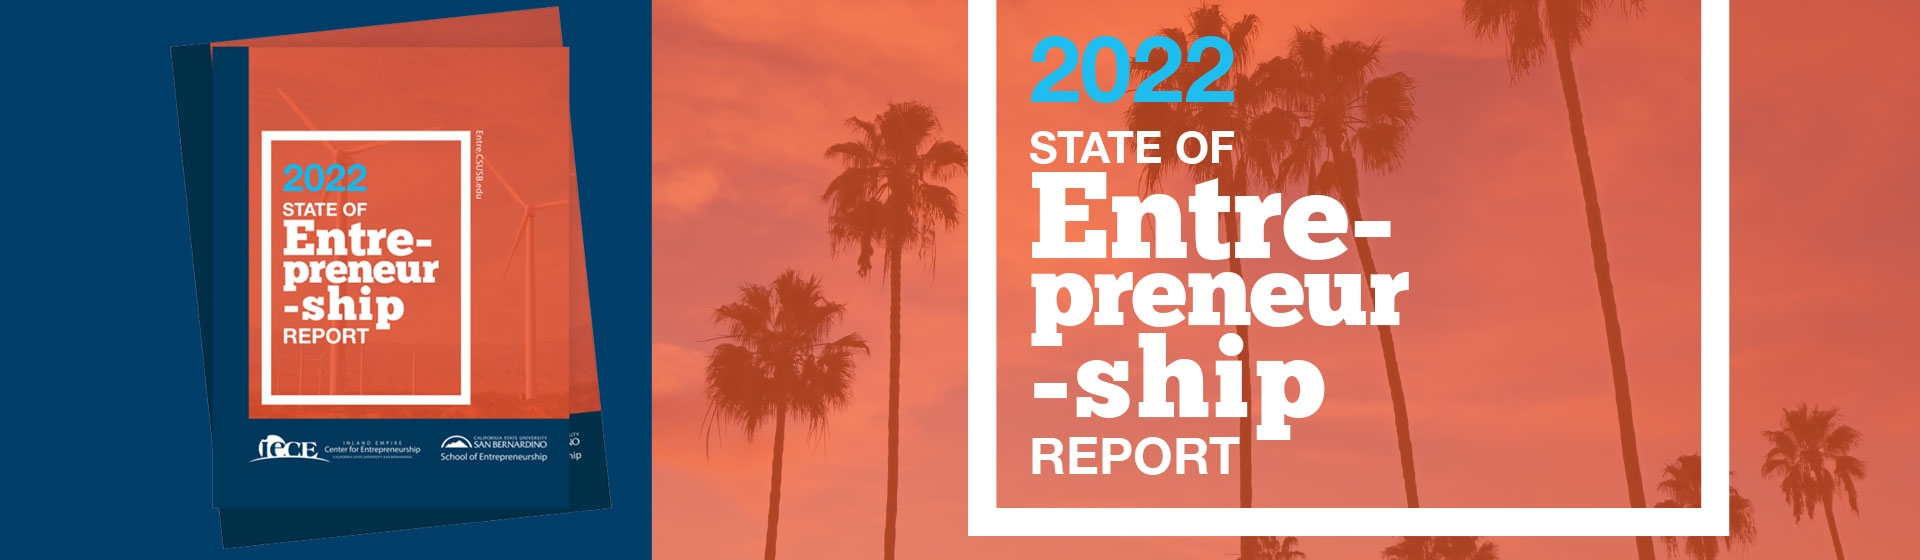 2022 STATE OF Entrepreneurship REPORT